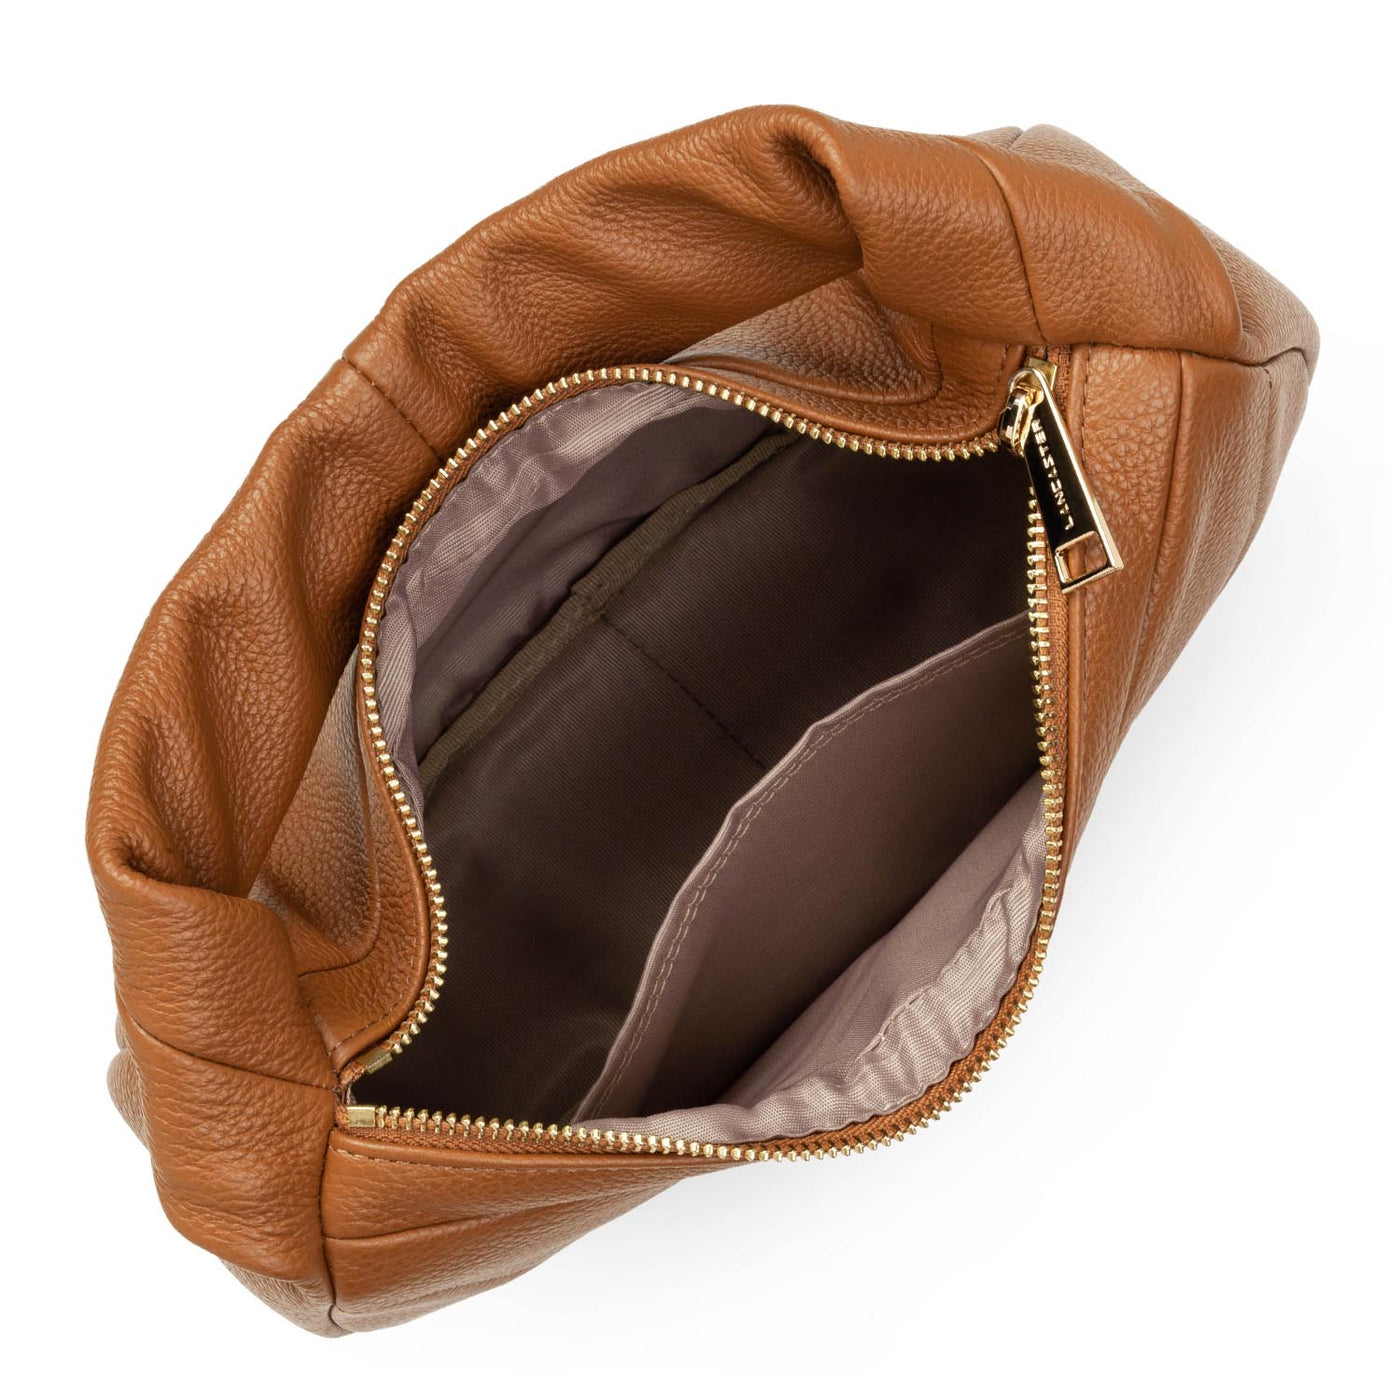 handbag - foulonné cerceau #couleur_caramel